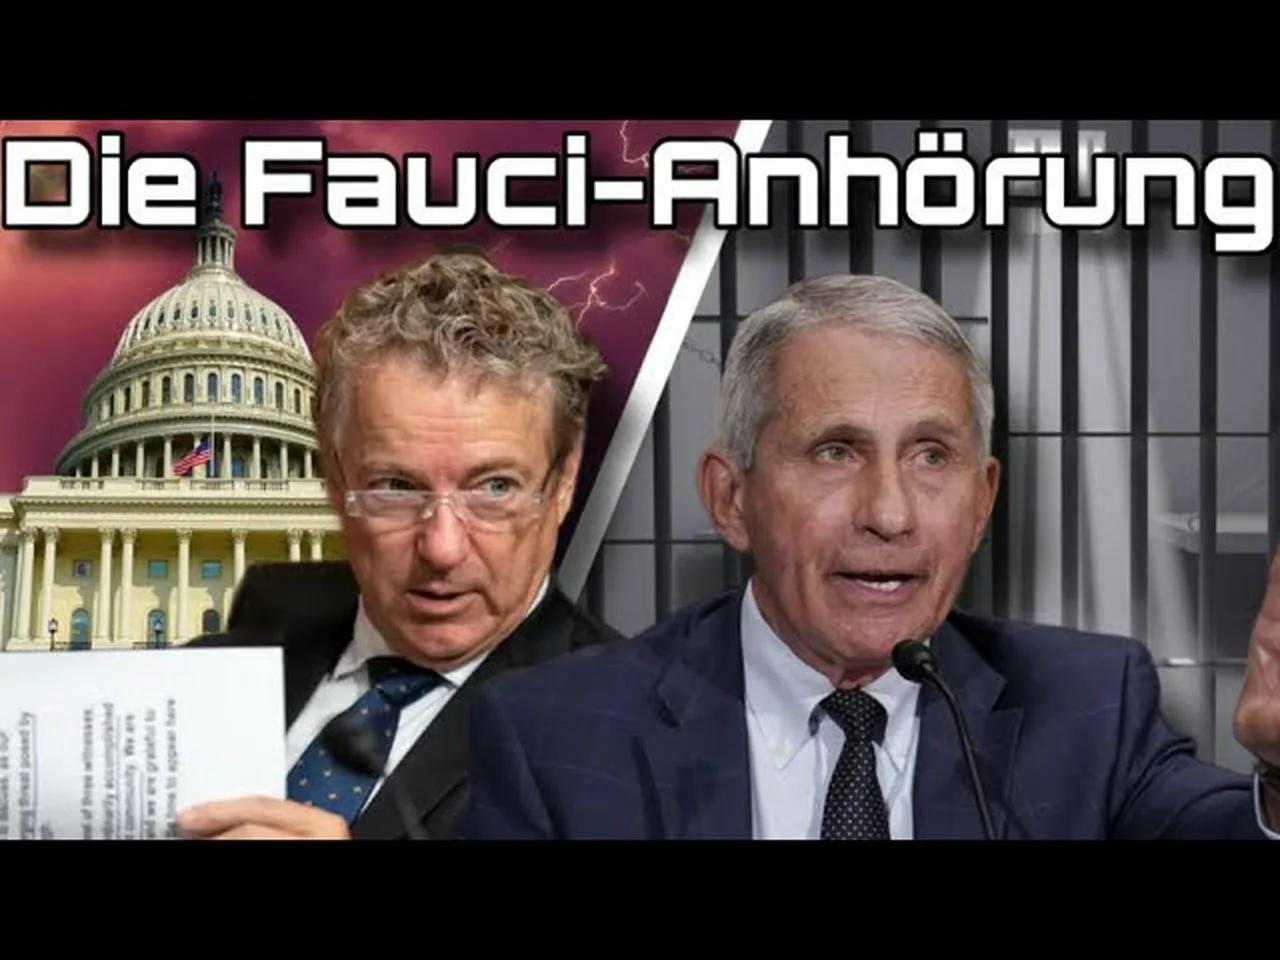 Die Fauci-Anhörung: „Dieser Mann gehört ins Gefängnis!“